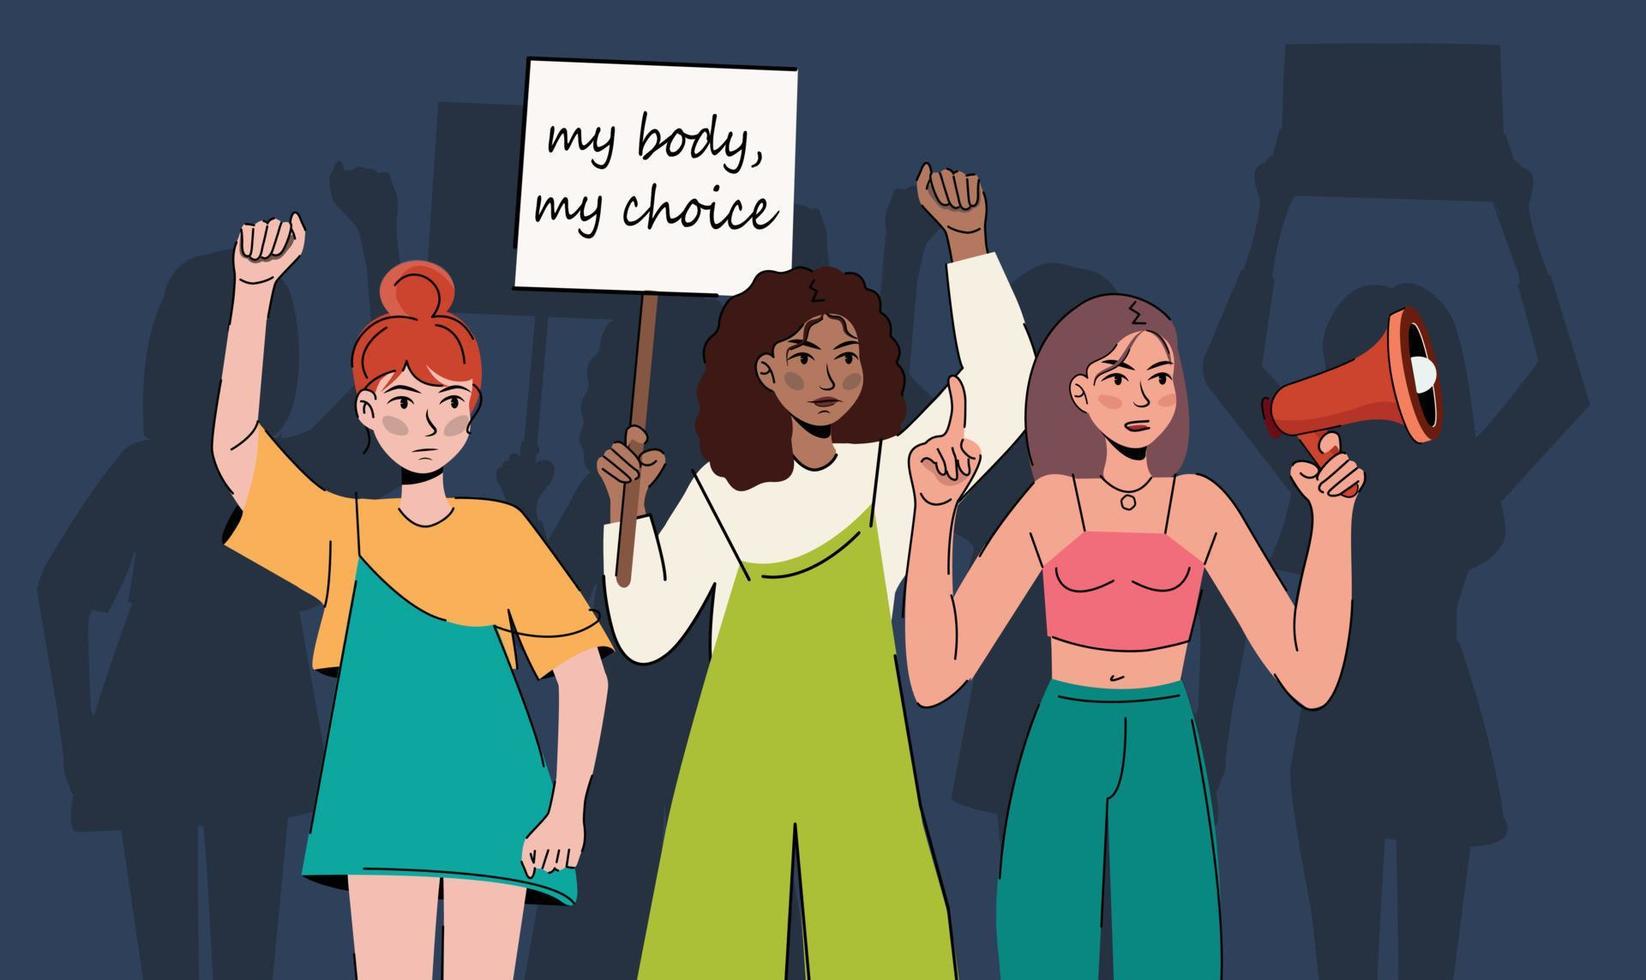 vrouwen protesteren pro-choice activisten met borden mijn lichaam mijn keuze, houd abortus legaal, abortus is gezondheidszorg mensen met borden die abortusrechten ondersteunen bij protestdemonstratie vector plat